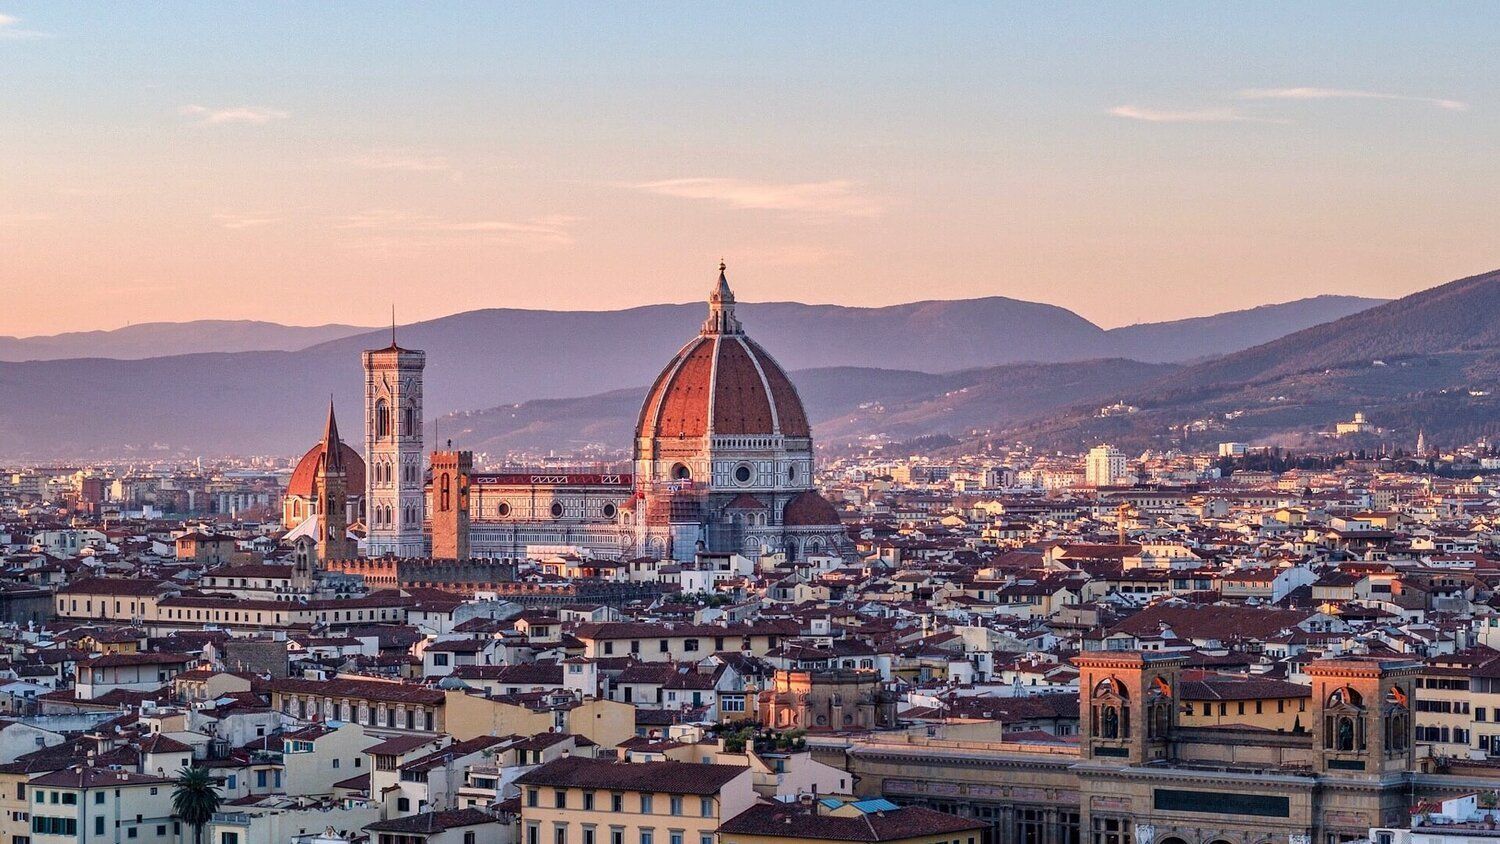 Veduta al tramonto di Firenze da Piazzale Michelangelo, con la Cattedrale di Santa Maria del Fiore in evidenza.